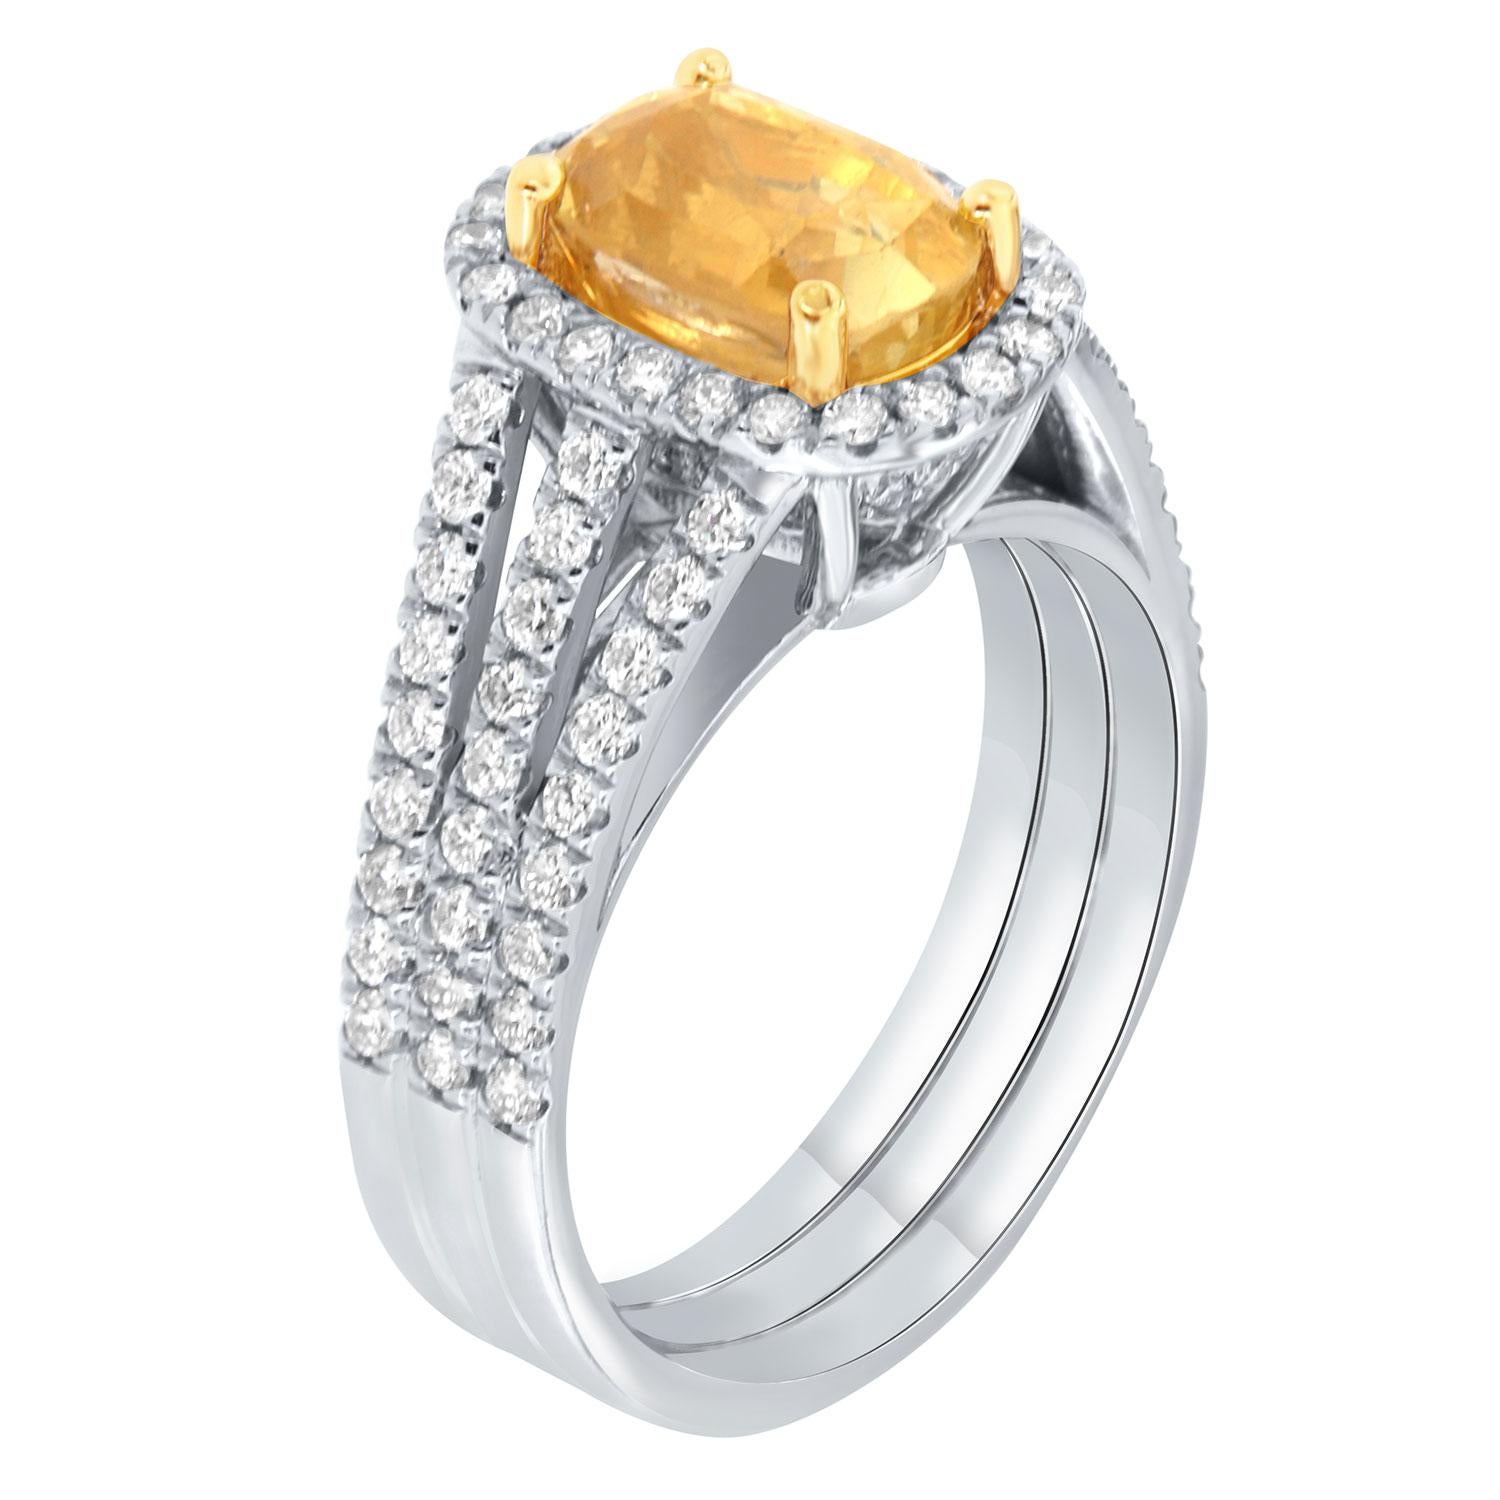 Handgefertigter königlicher Ring aus 18 Karat Weiß- und Gelbgold, mit einem einzigartigen Unikat  3,26 Karat GIA zertifizierter unerhitzter länglicher antiker Kissen natürlicher unerhitzter gelber Saphir aus Sri Lanka. Er weist eine leuchtend gelbe